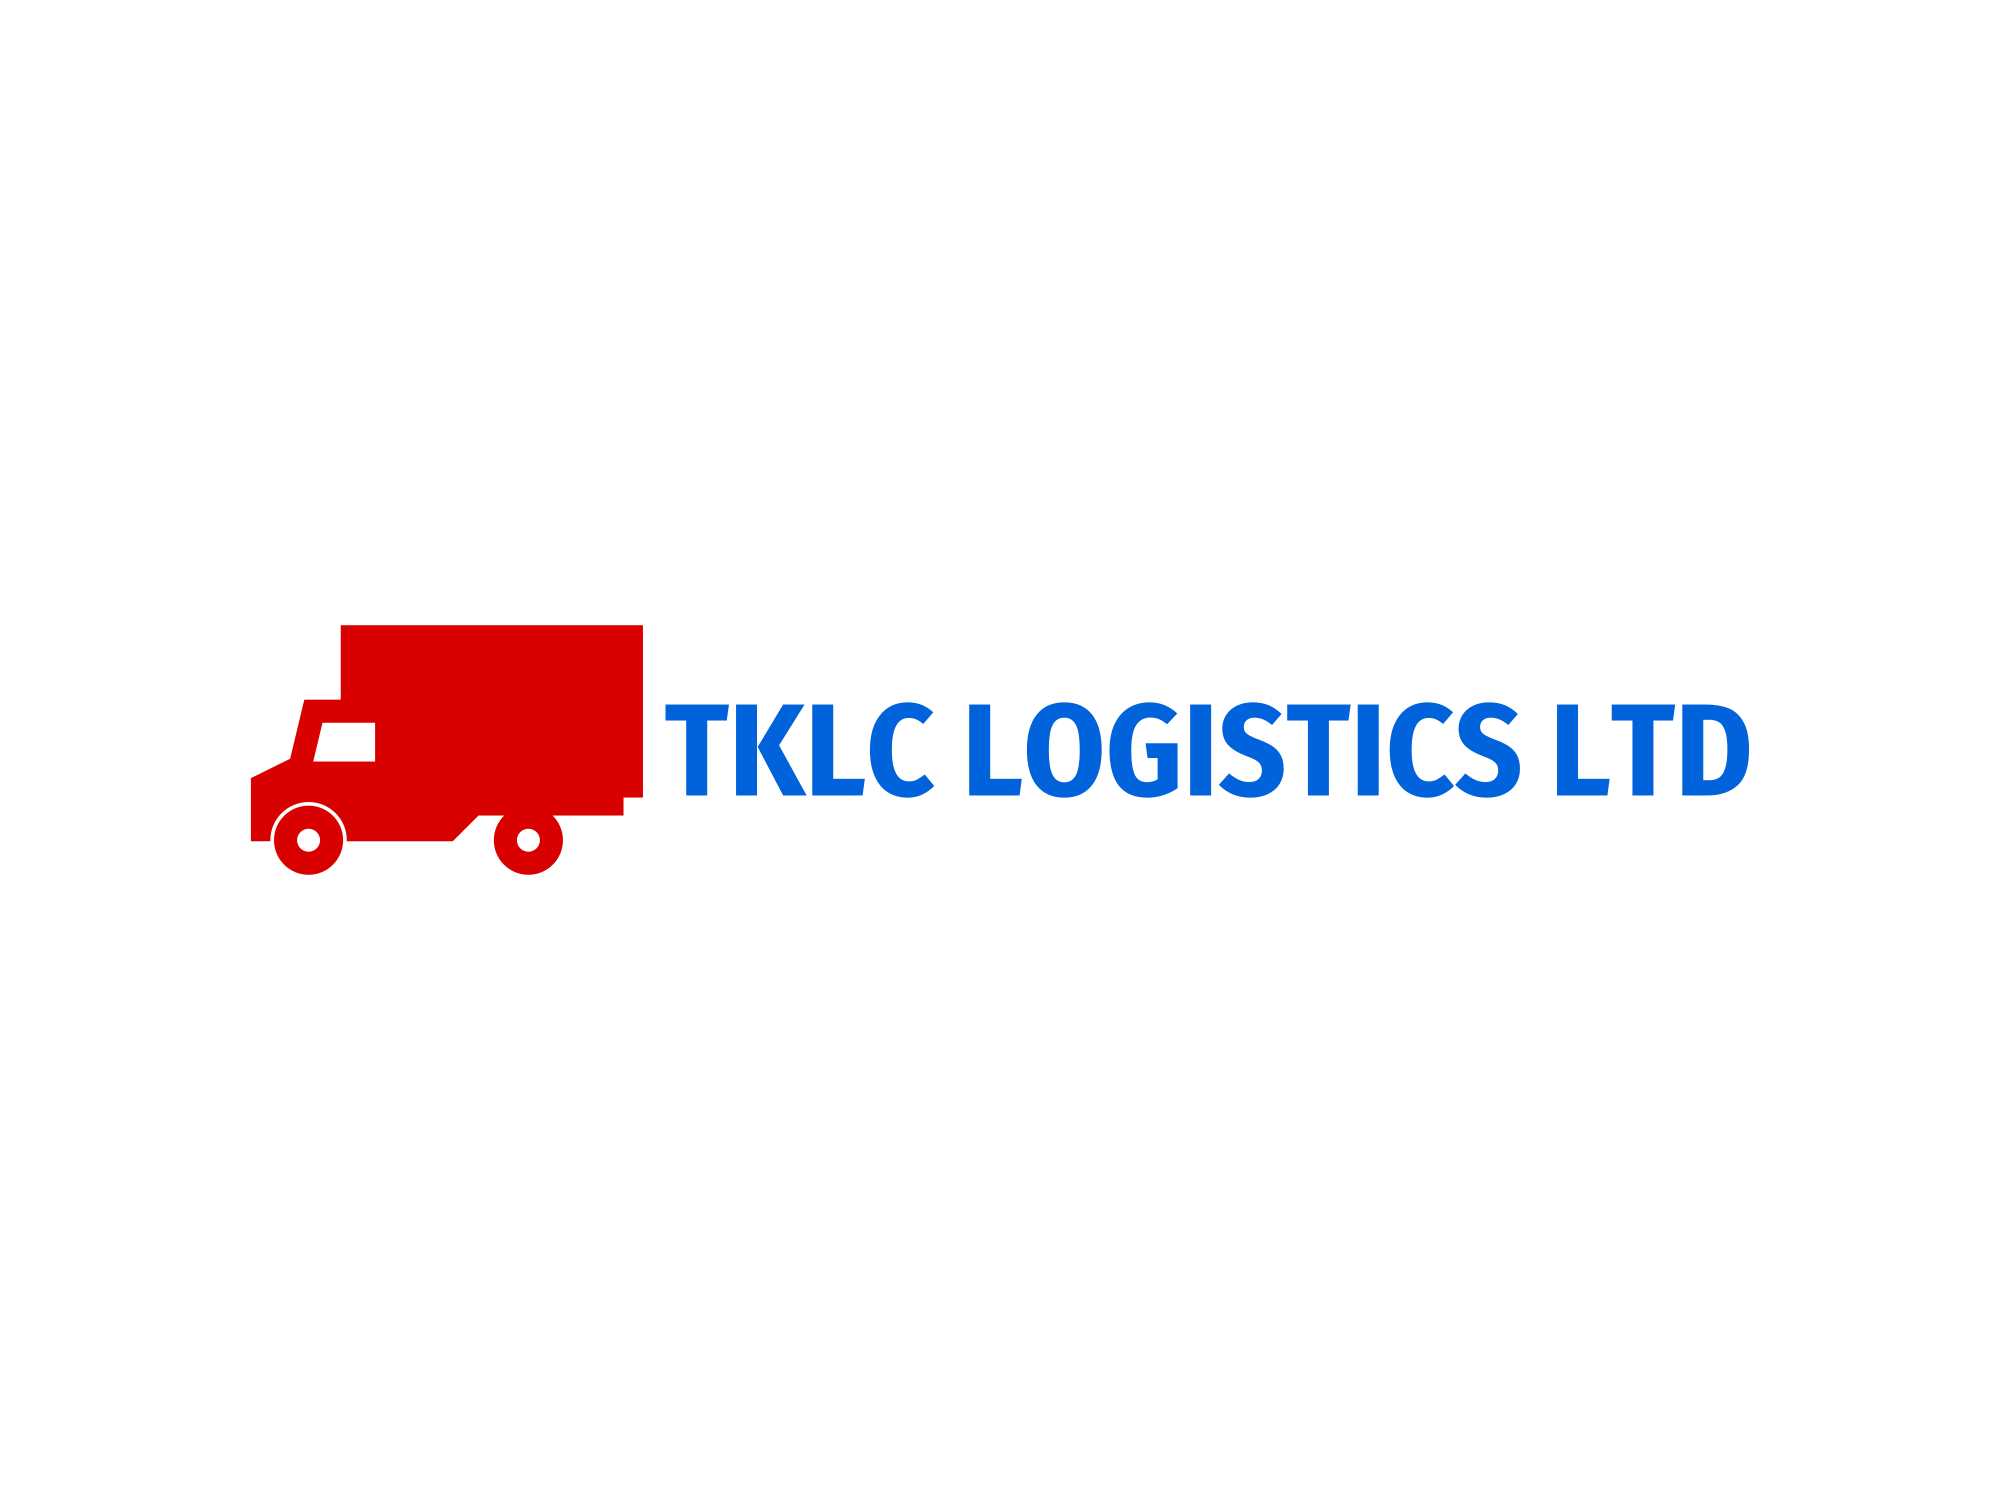 TKLC LOGISTICS LTD